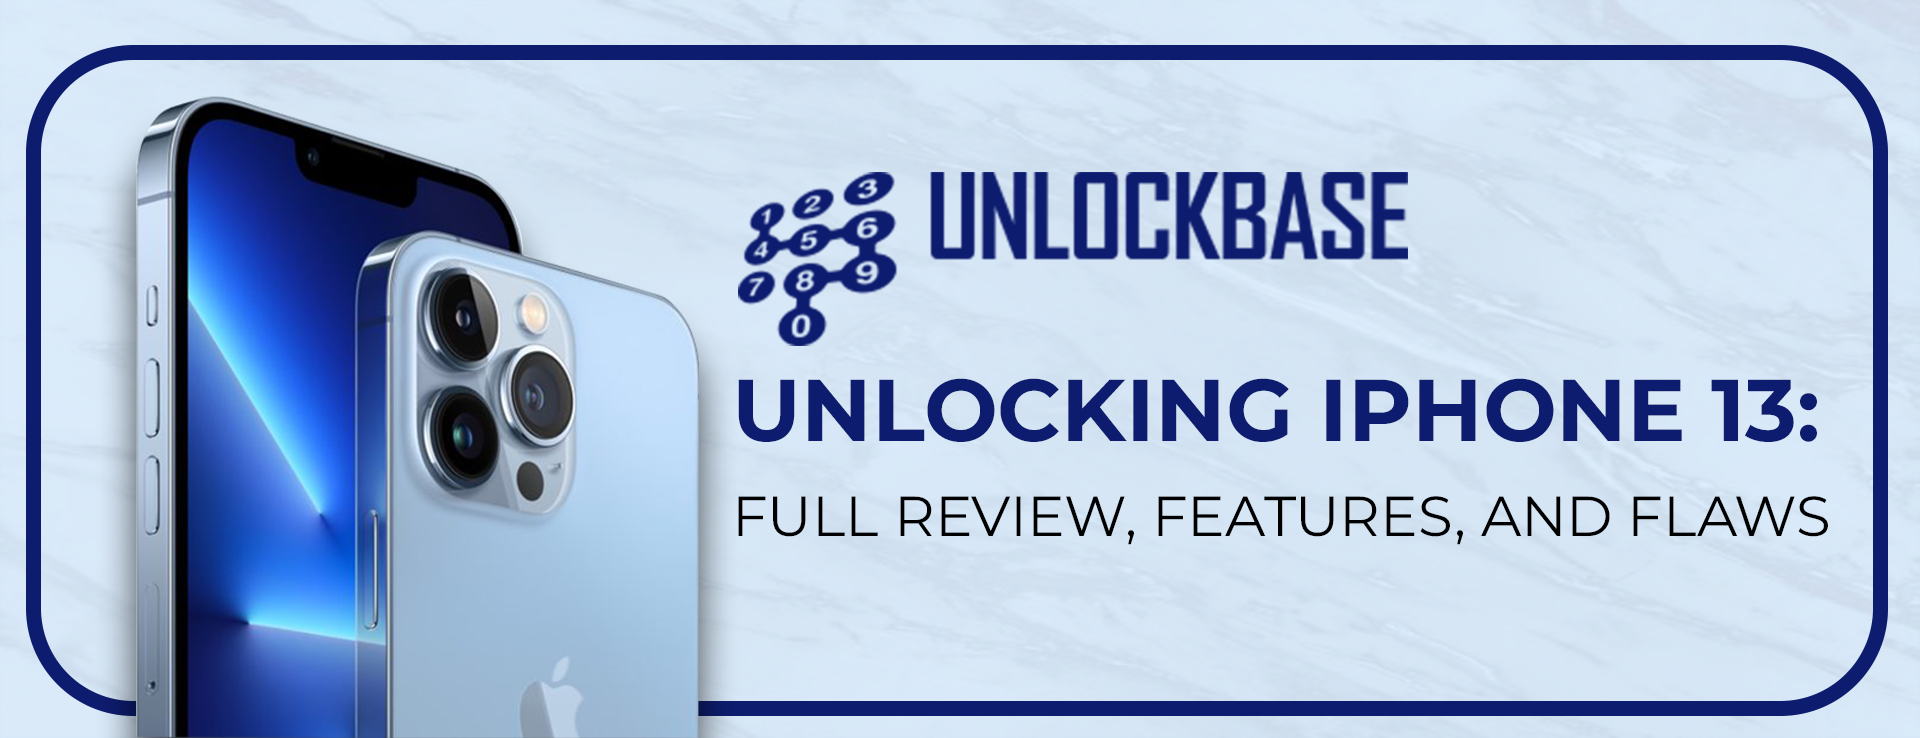 unlockbase overseas